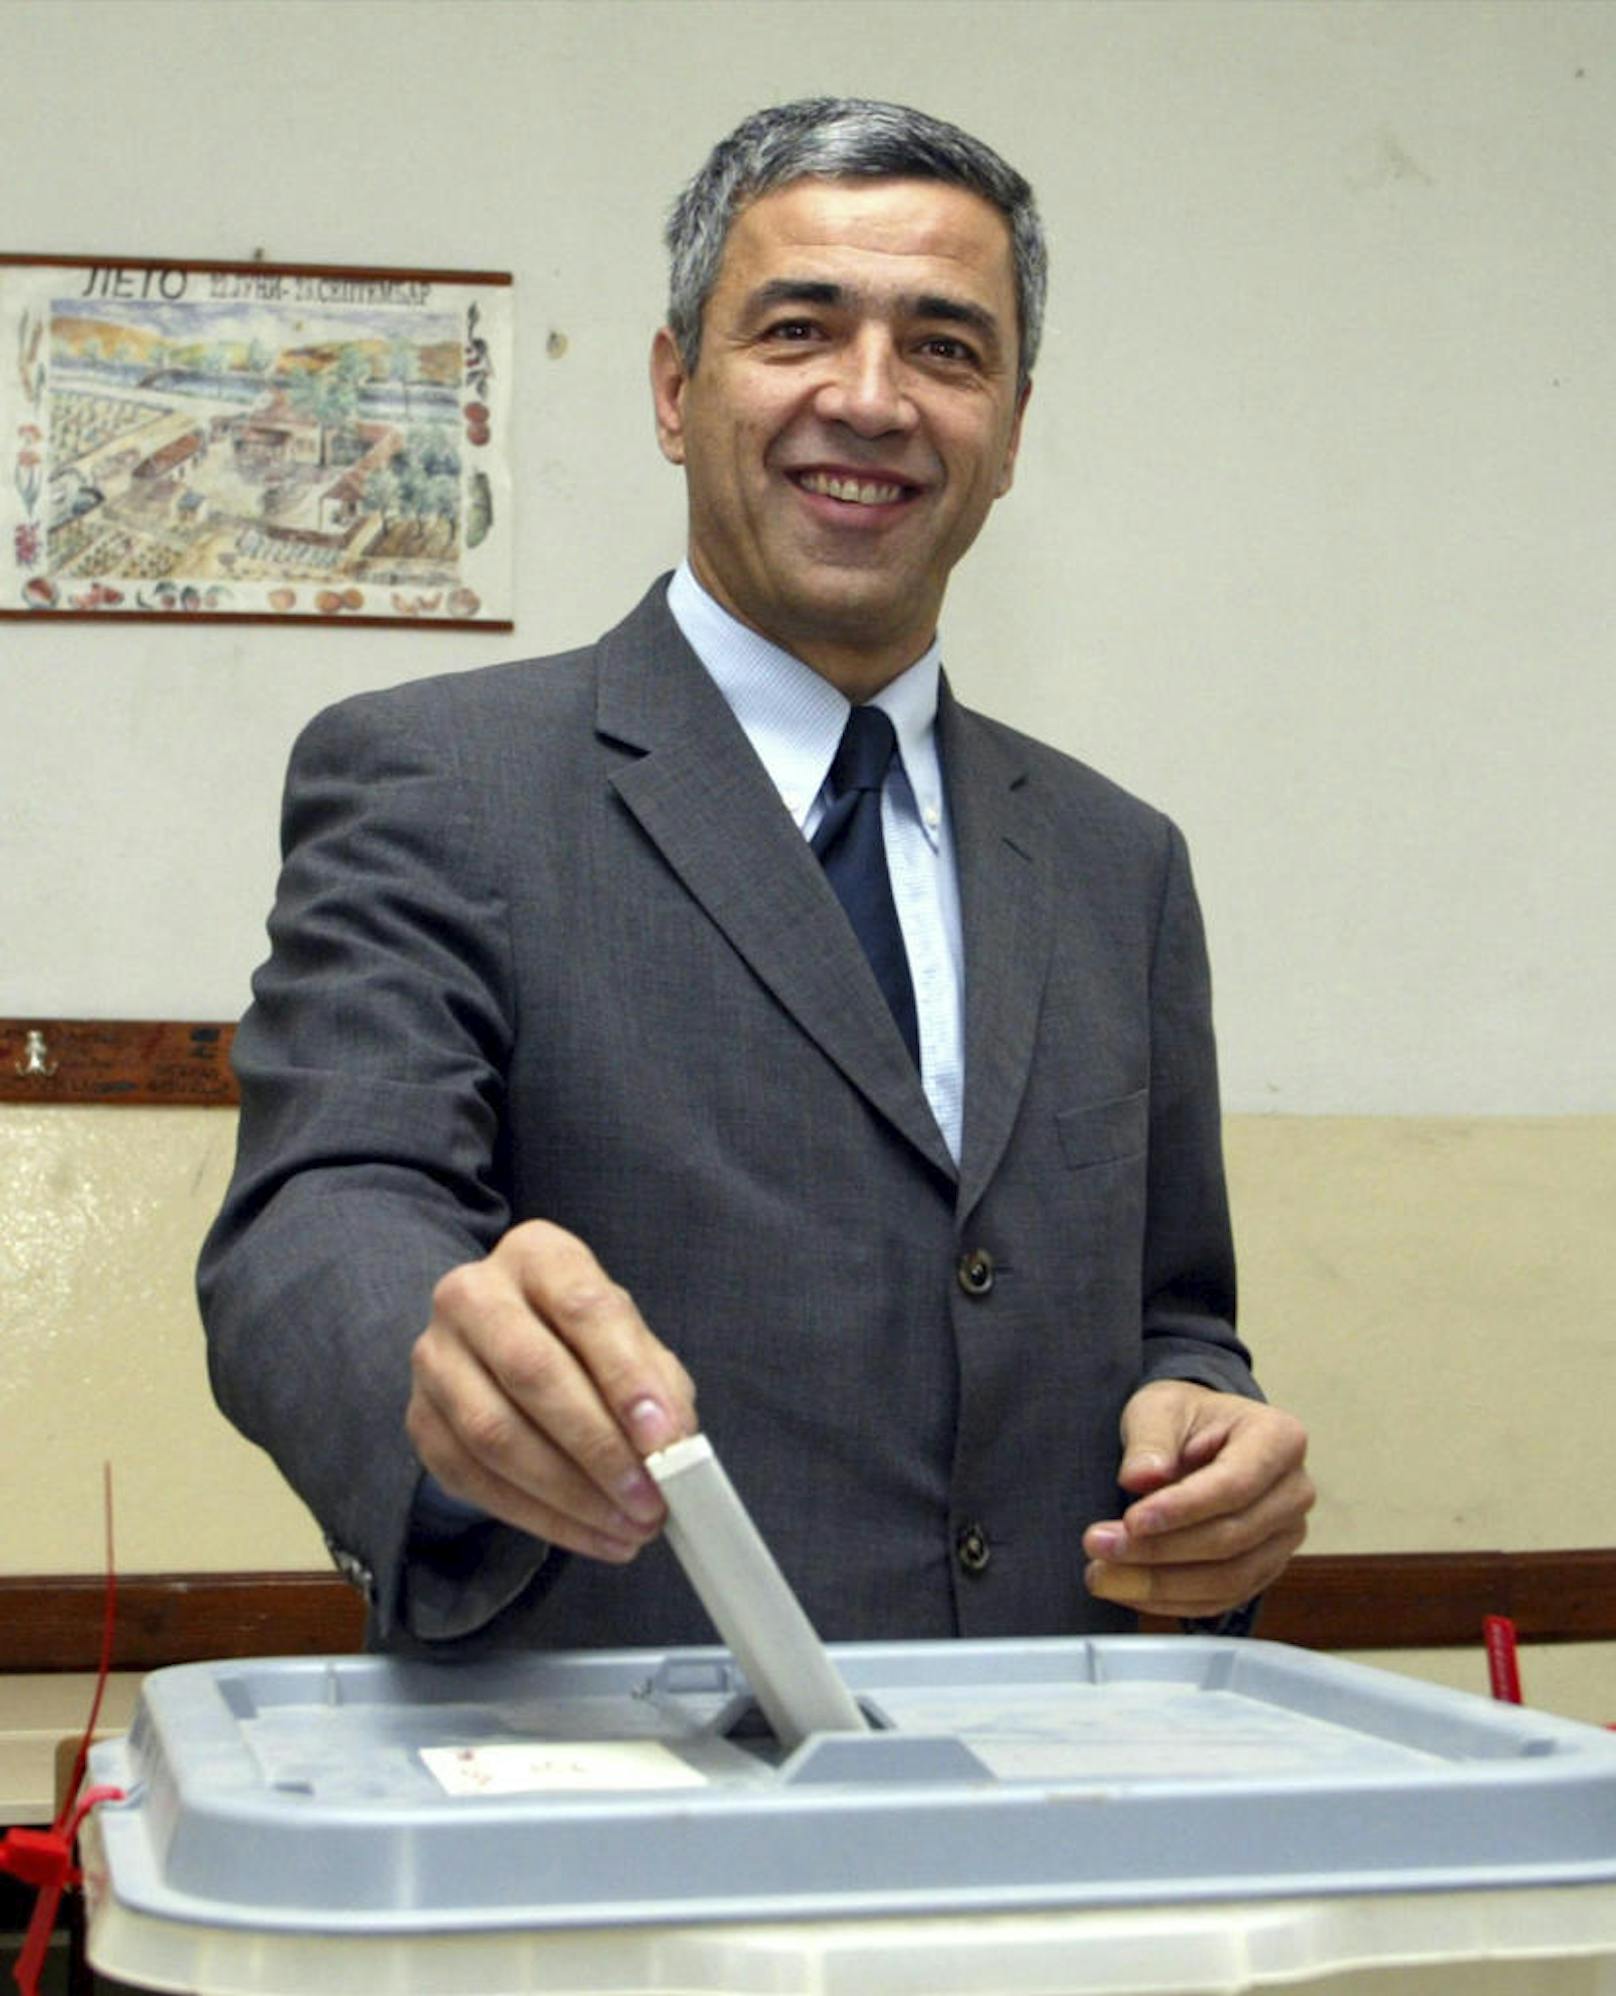 Oliver Ivanovic war einer der wichtigsten politischen Vertreter der serbischen Minderheit im Kosovo. Seine Partei gab am Dienstag bekannt, dass er ermordet wurde.